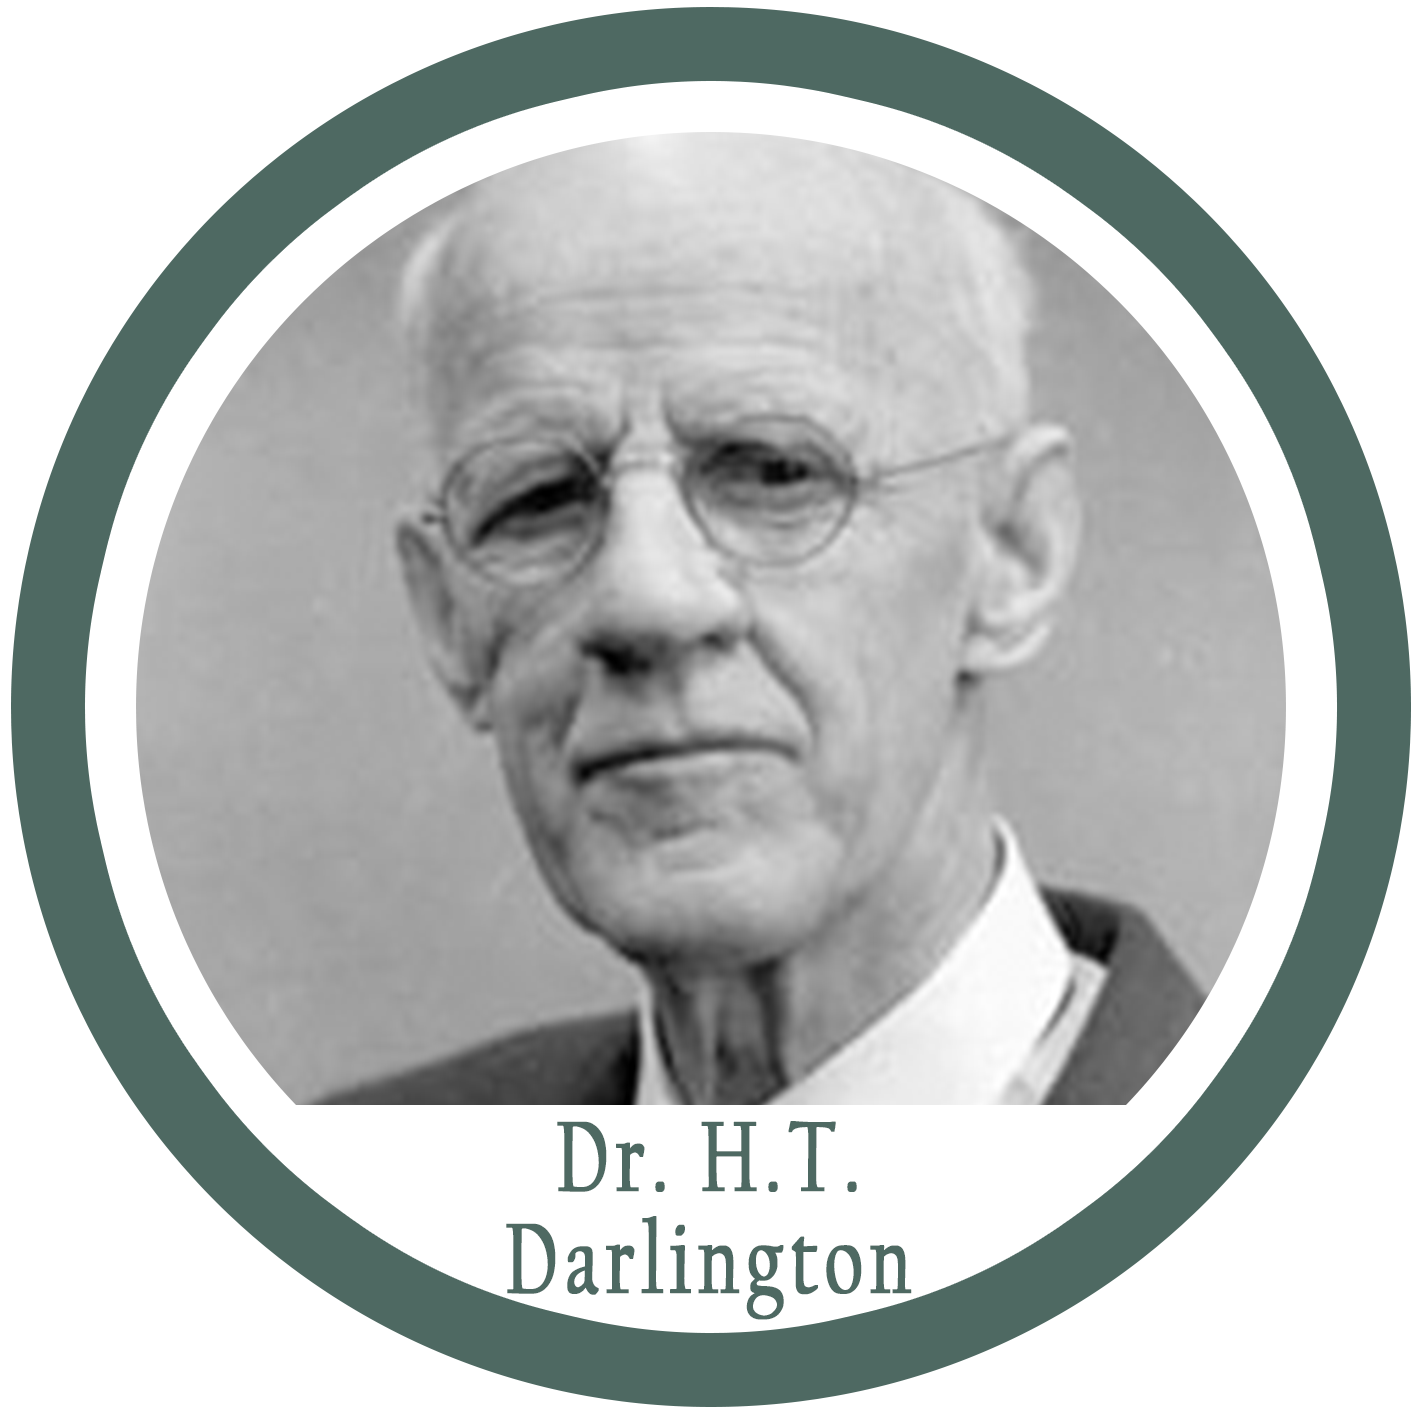 Dr. Darlington picture